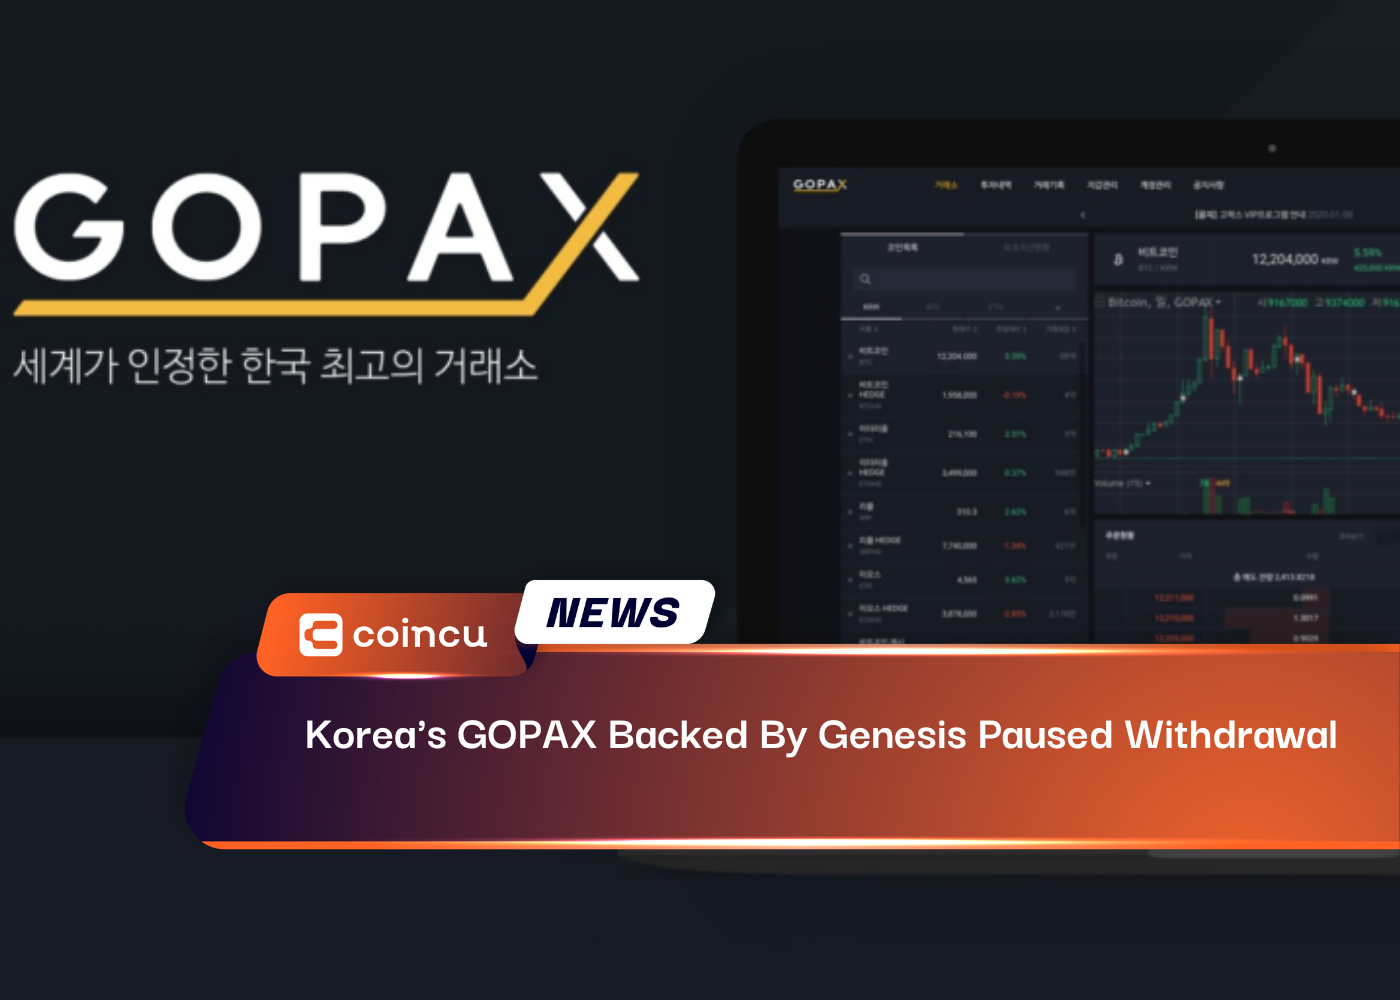 Korea's GOPAX Backed By Genesis Paused Withdrawal